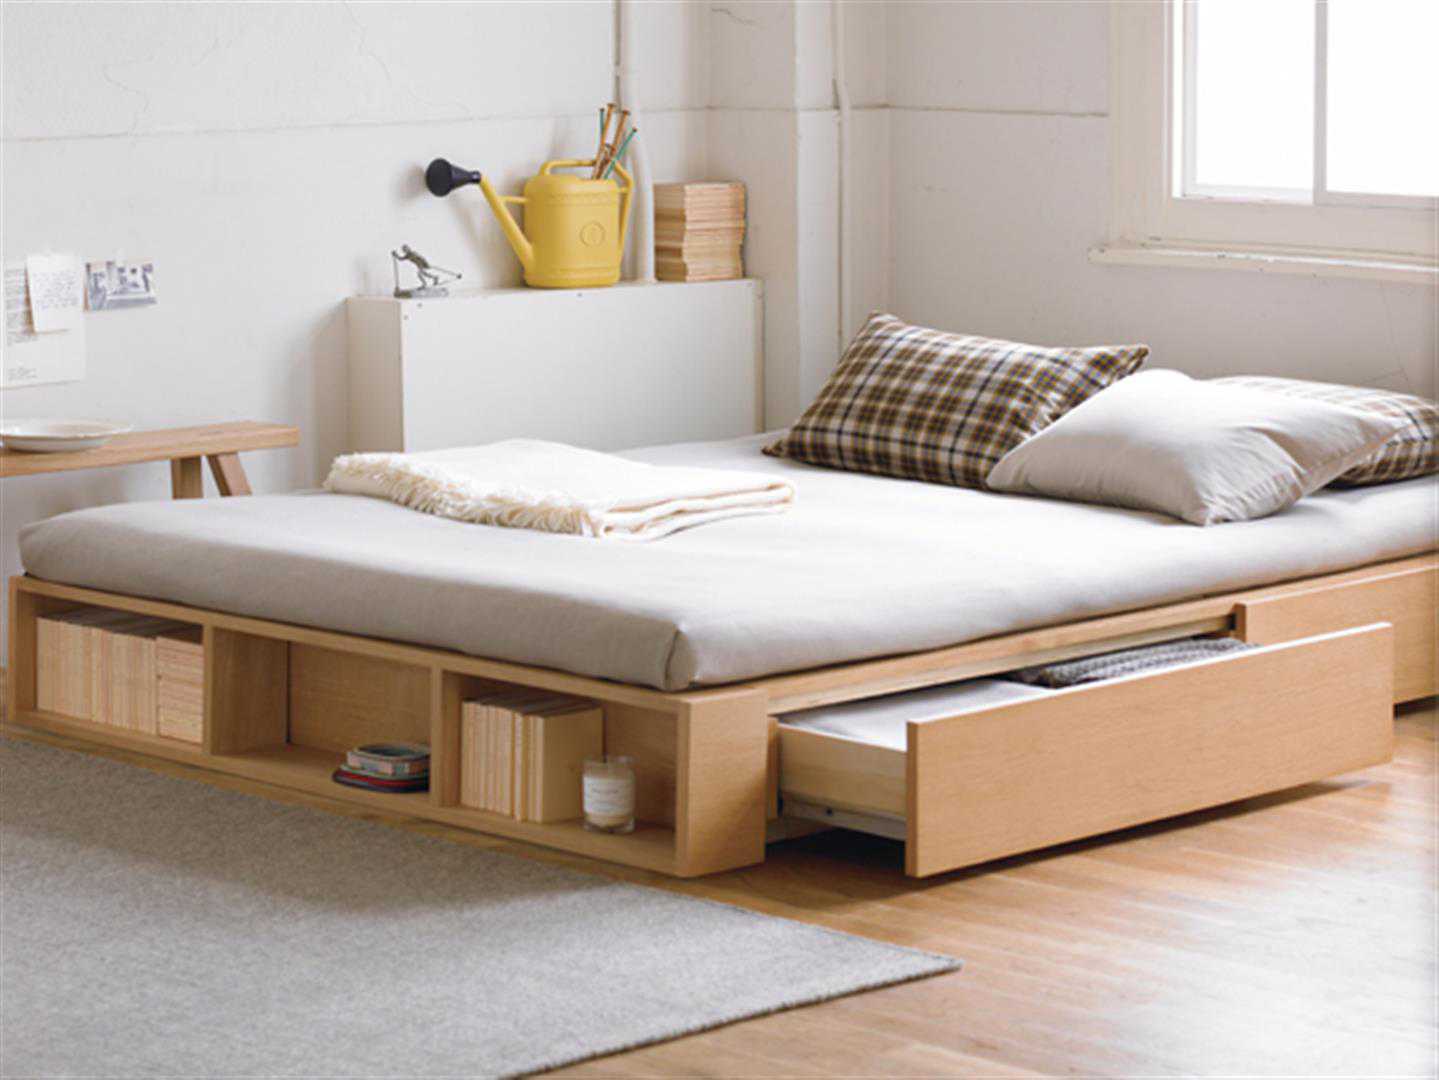 Gợi ý những mẫu giường ngủ nhỏ đẹp nhưng vẫn thông minh, tiện nghi